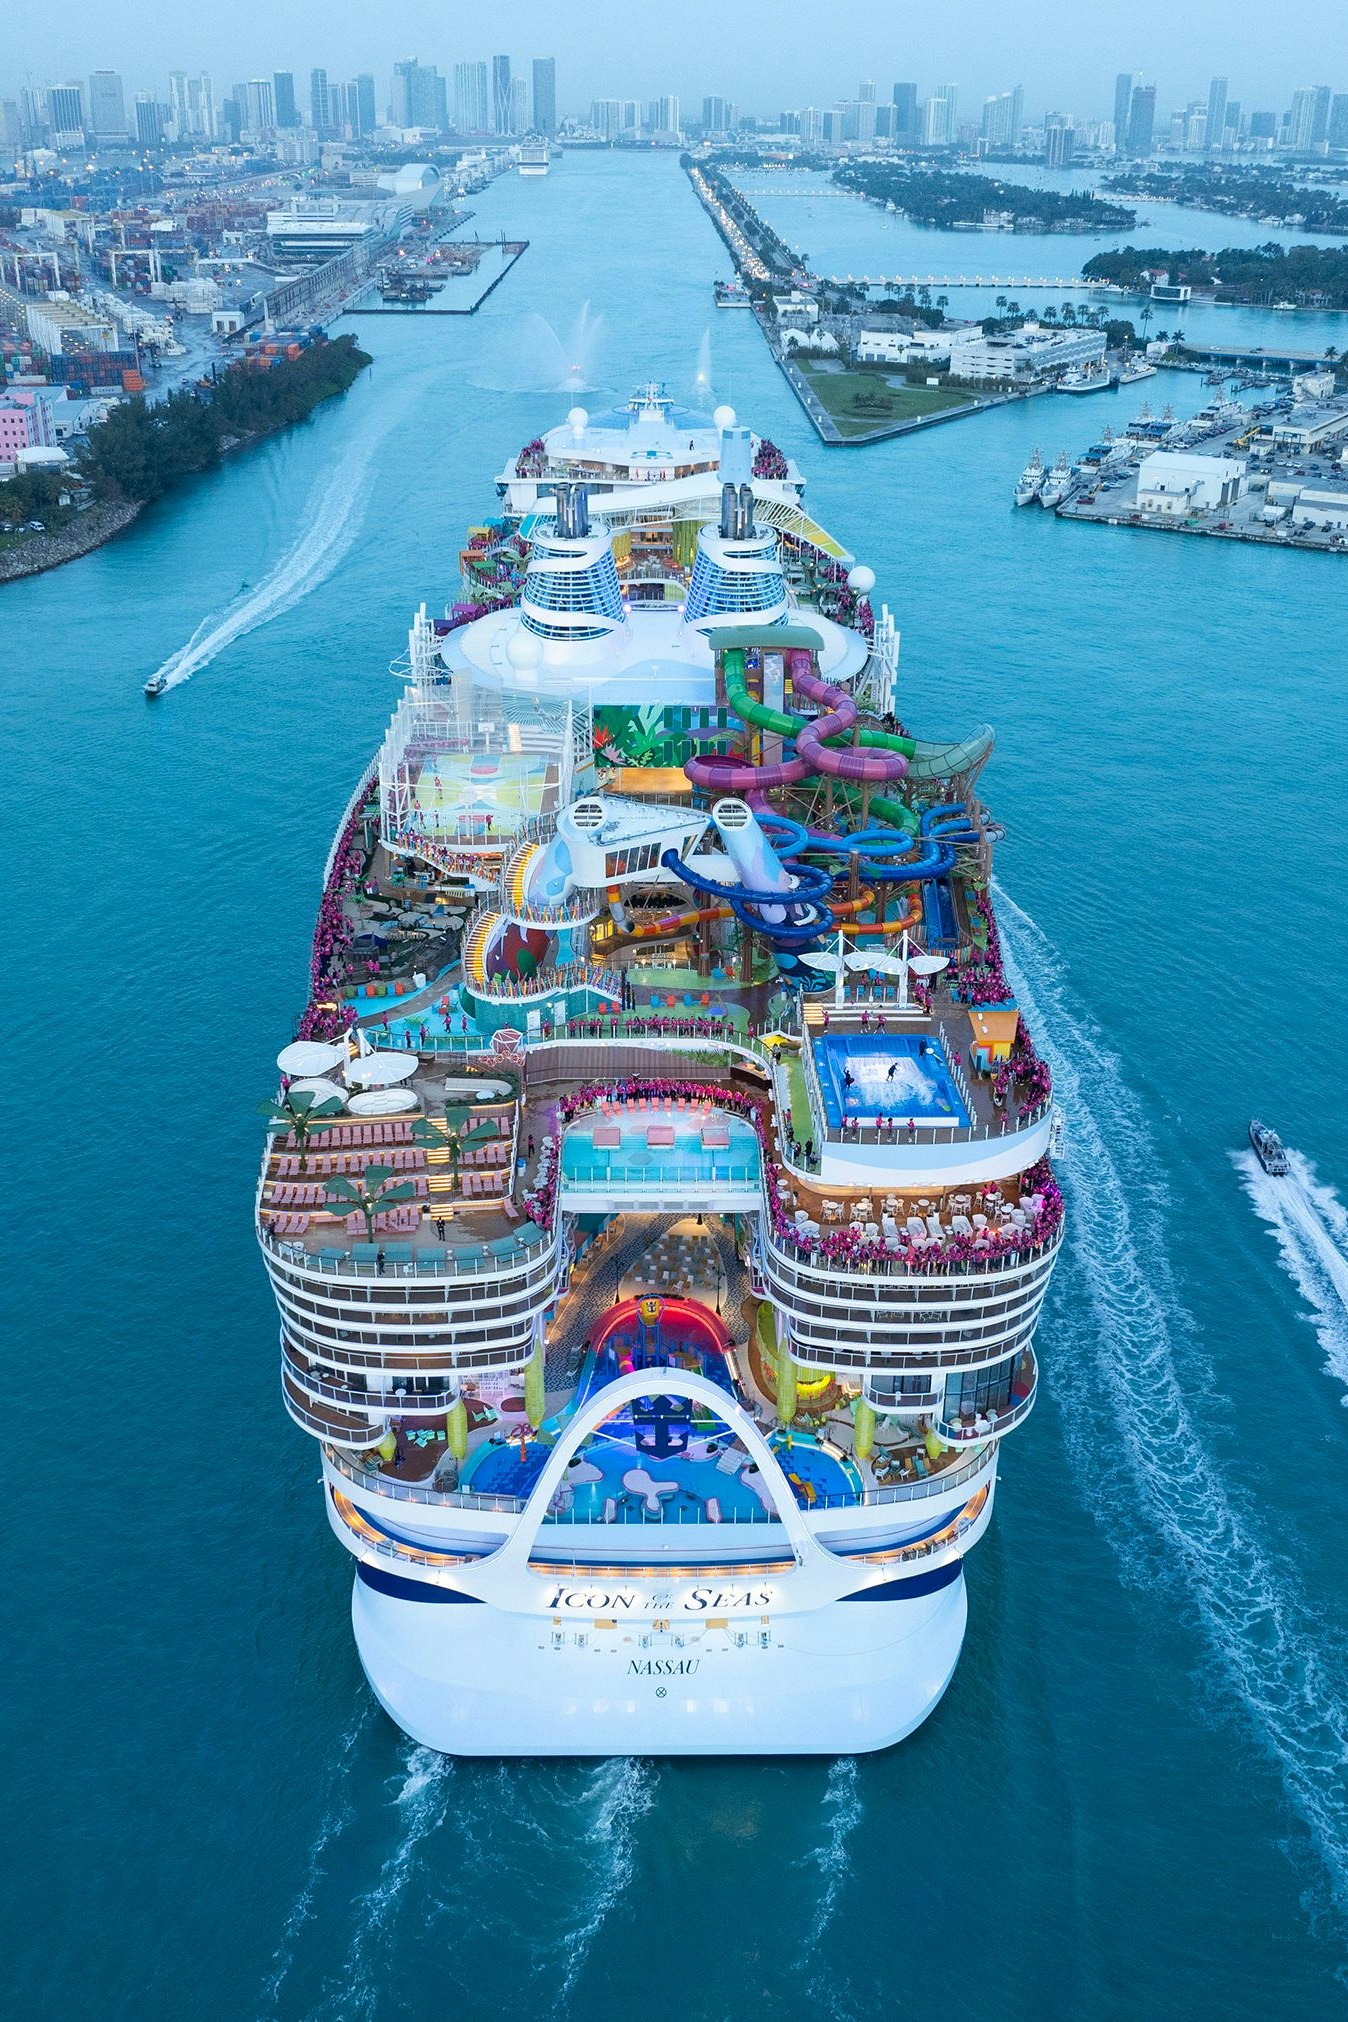 Knapp 250.000 Bruttoregistertonnen: Kein kreuzfahrtschiff ist größer als die "Icon of the Seas"